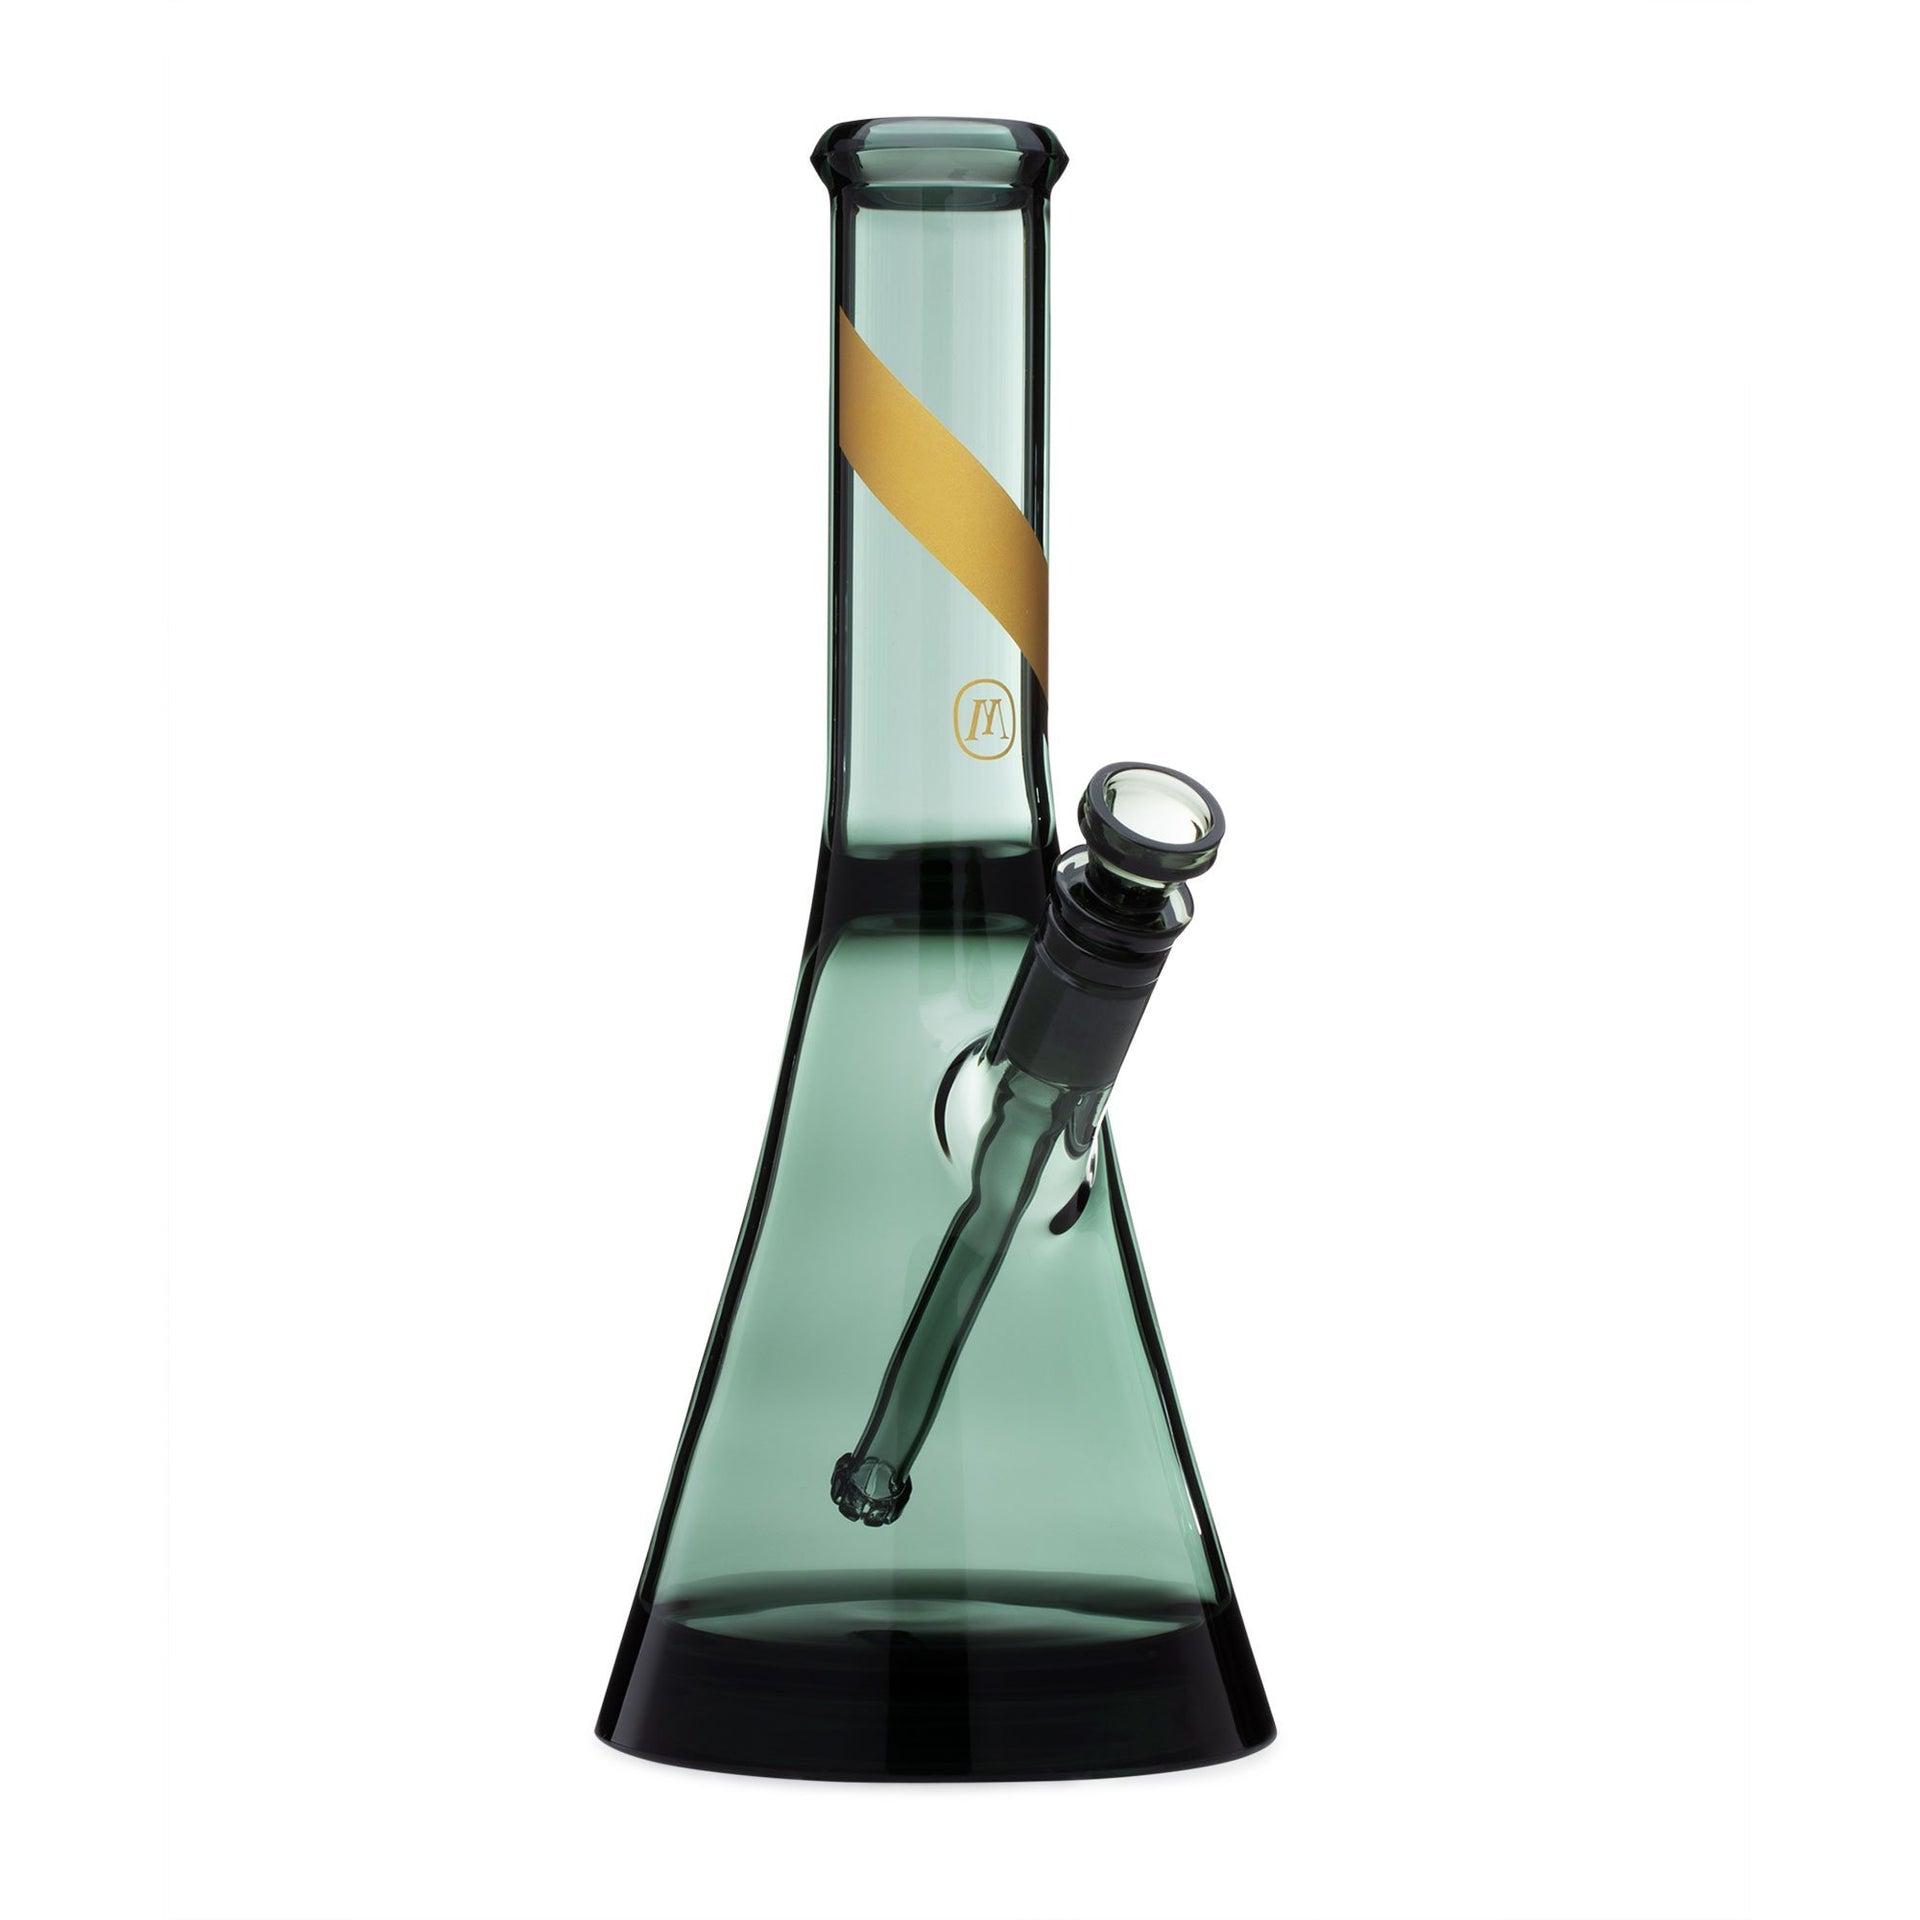 Marley Natural Smoked Glass Beaker Bong / $ 159.99 at 420 Science